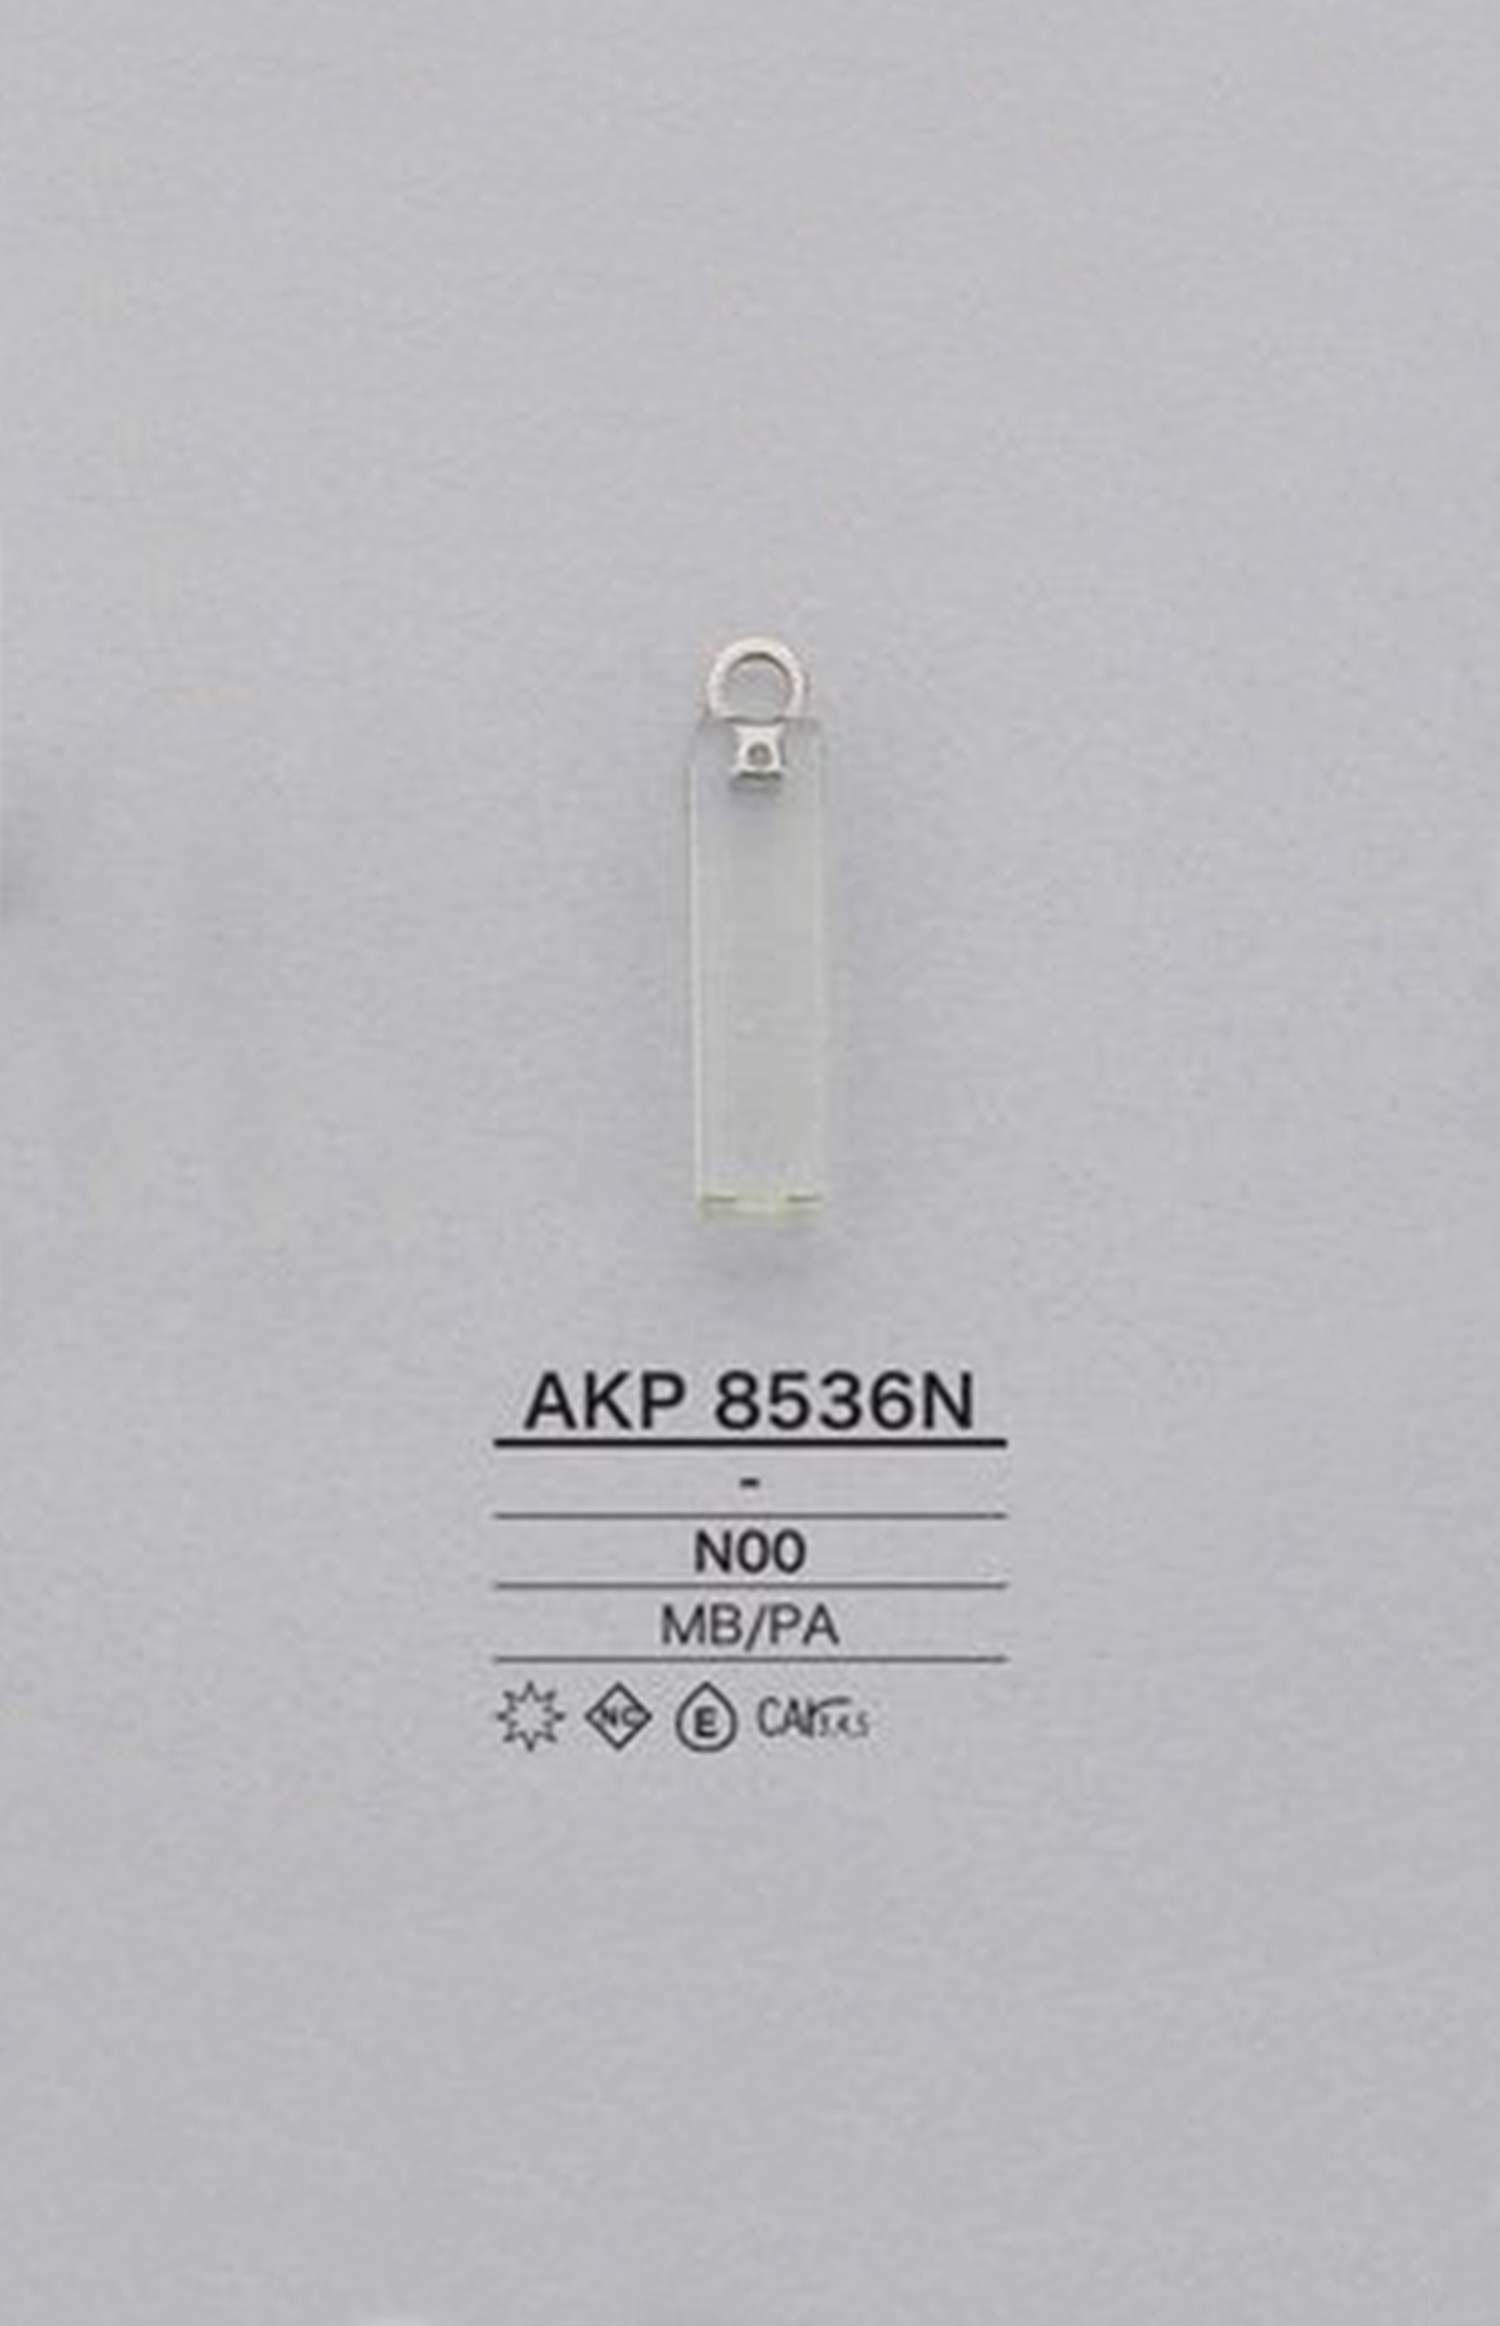 AKP8536N Nylon Square Zipper Point (Pull Tab) IRIS